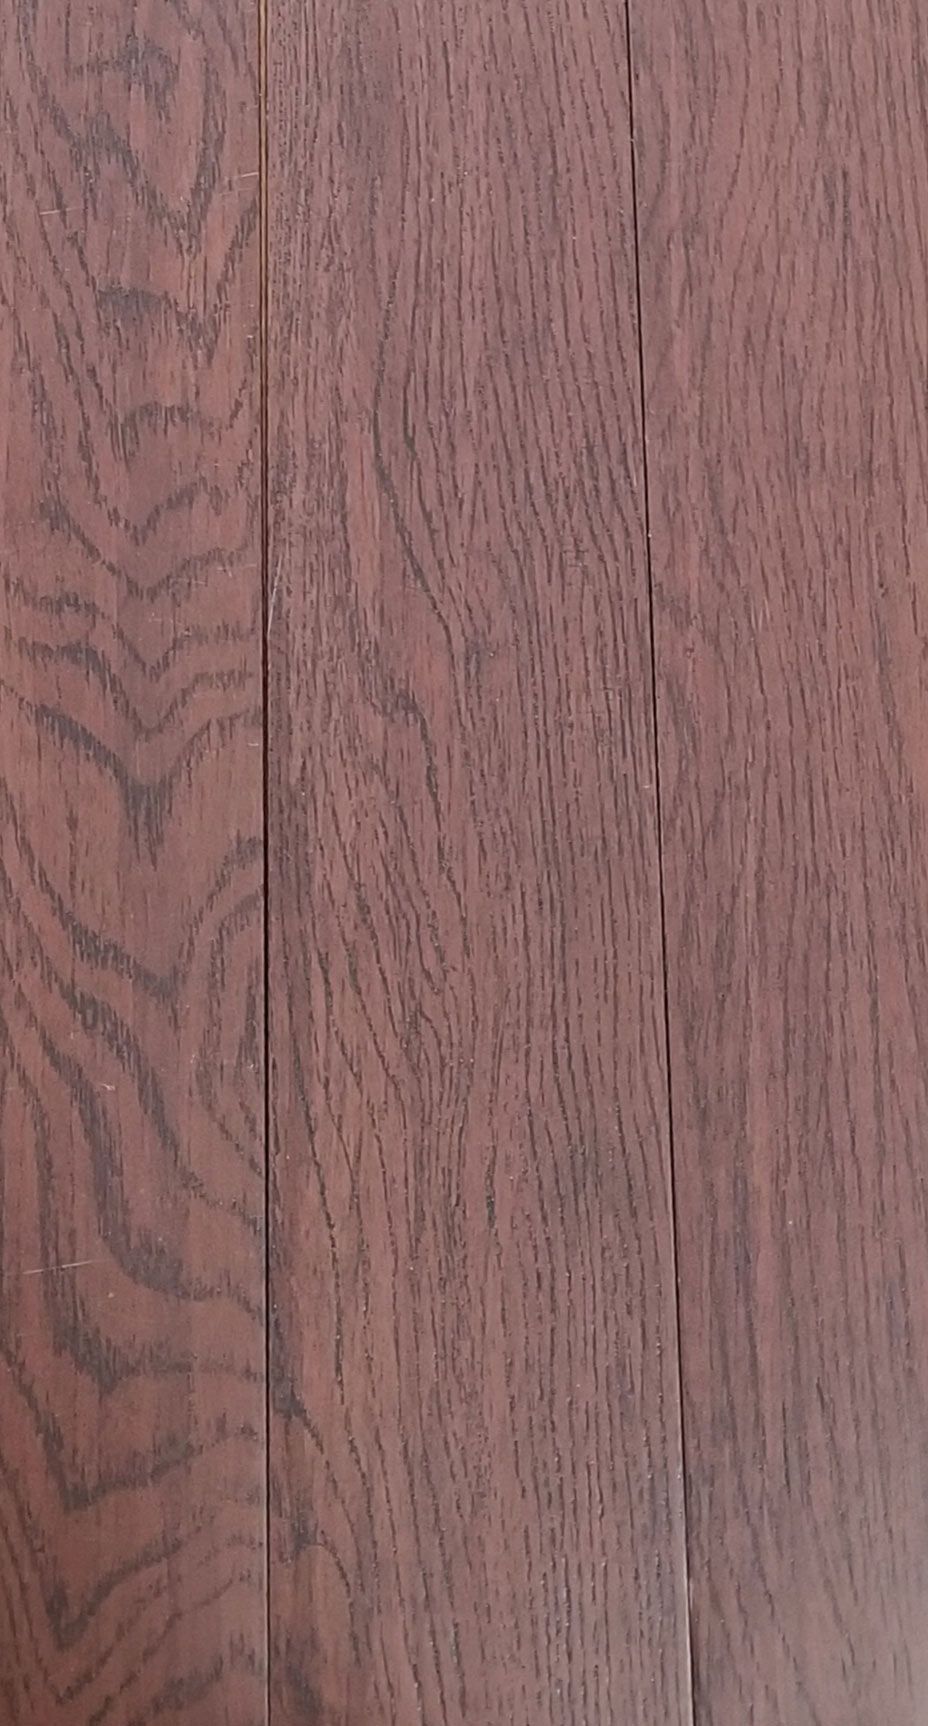 Wood Look Vinyl Plank and Carpeting — Hardwood Floor With SKU Number 30100512166 in Saint Petersburg, FL